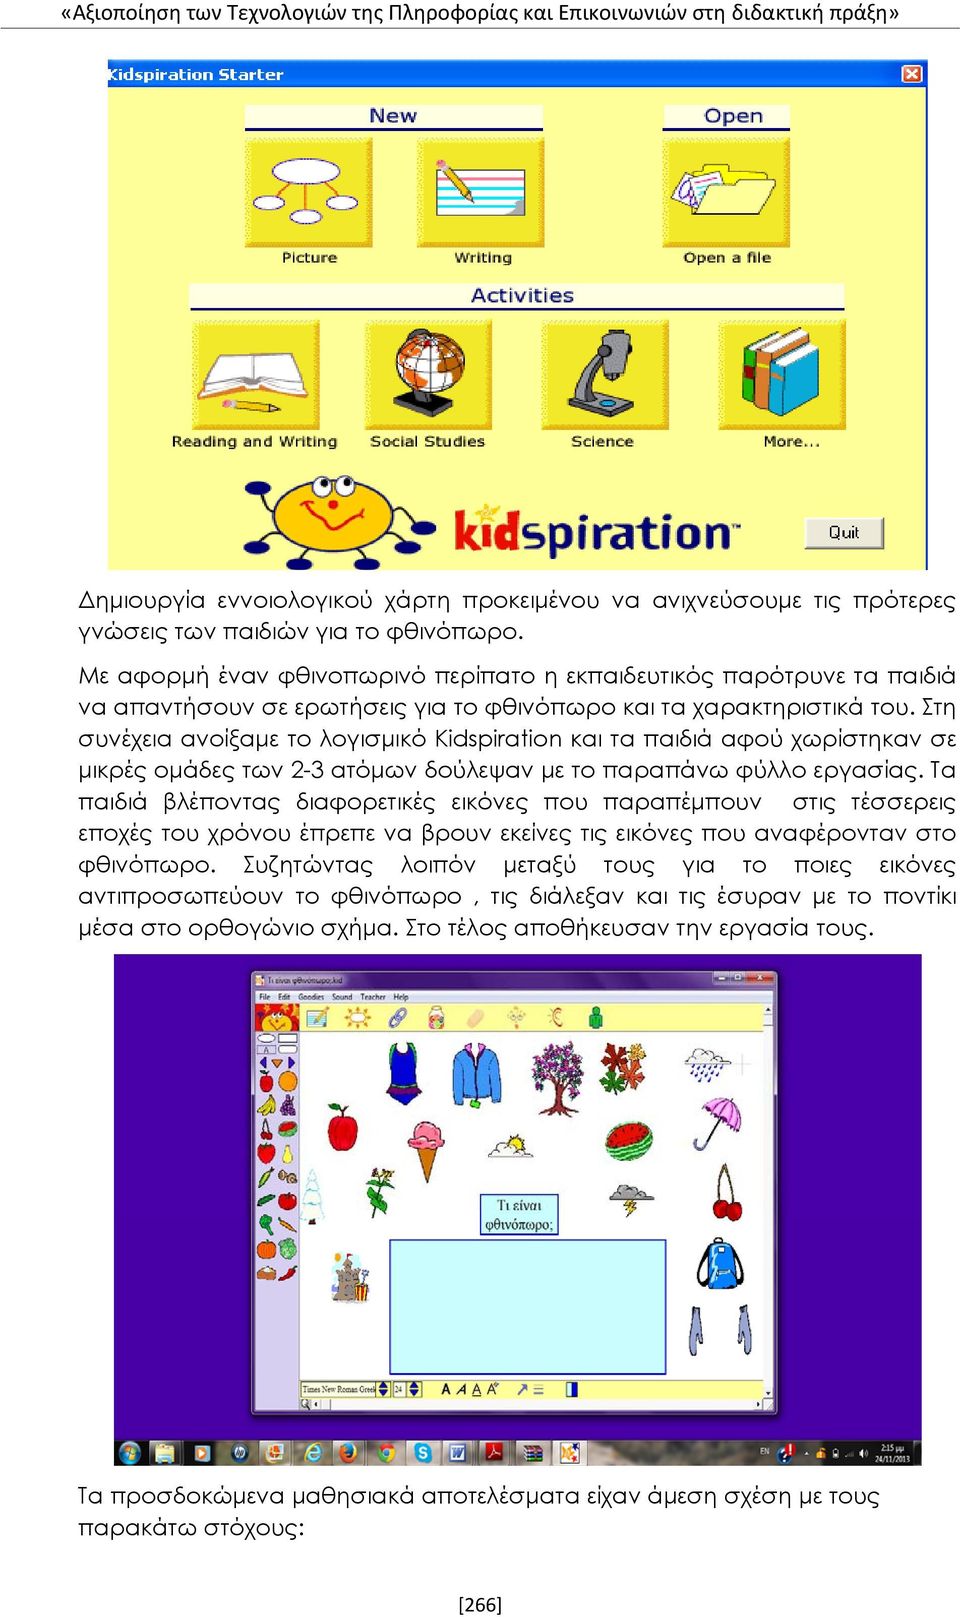 Στη συνέχεια ανοίξαμε το λογισμικό Kidspiration και τα παιδιά αφού χωρίστηκαν σε μικρές ομάδες των 2-3 ατόμων δούλεψαν με το παραπάνω φύλλο εργασίας.